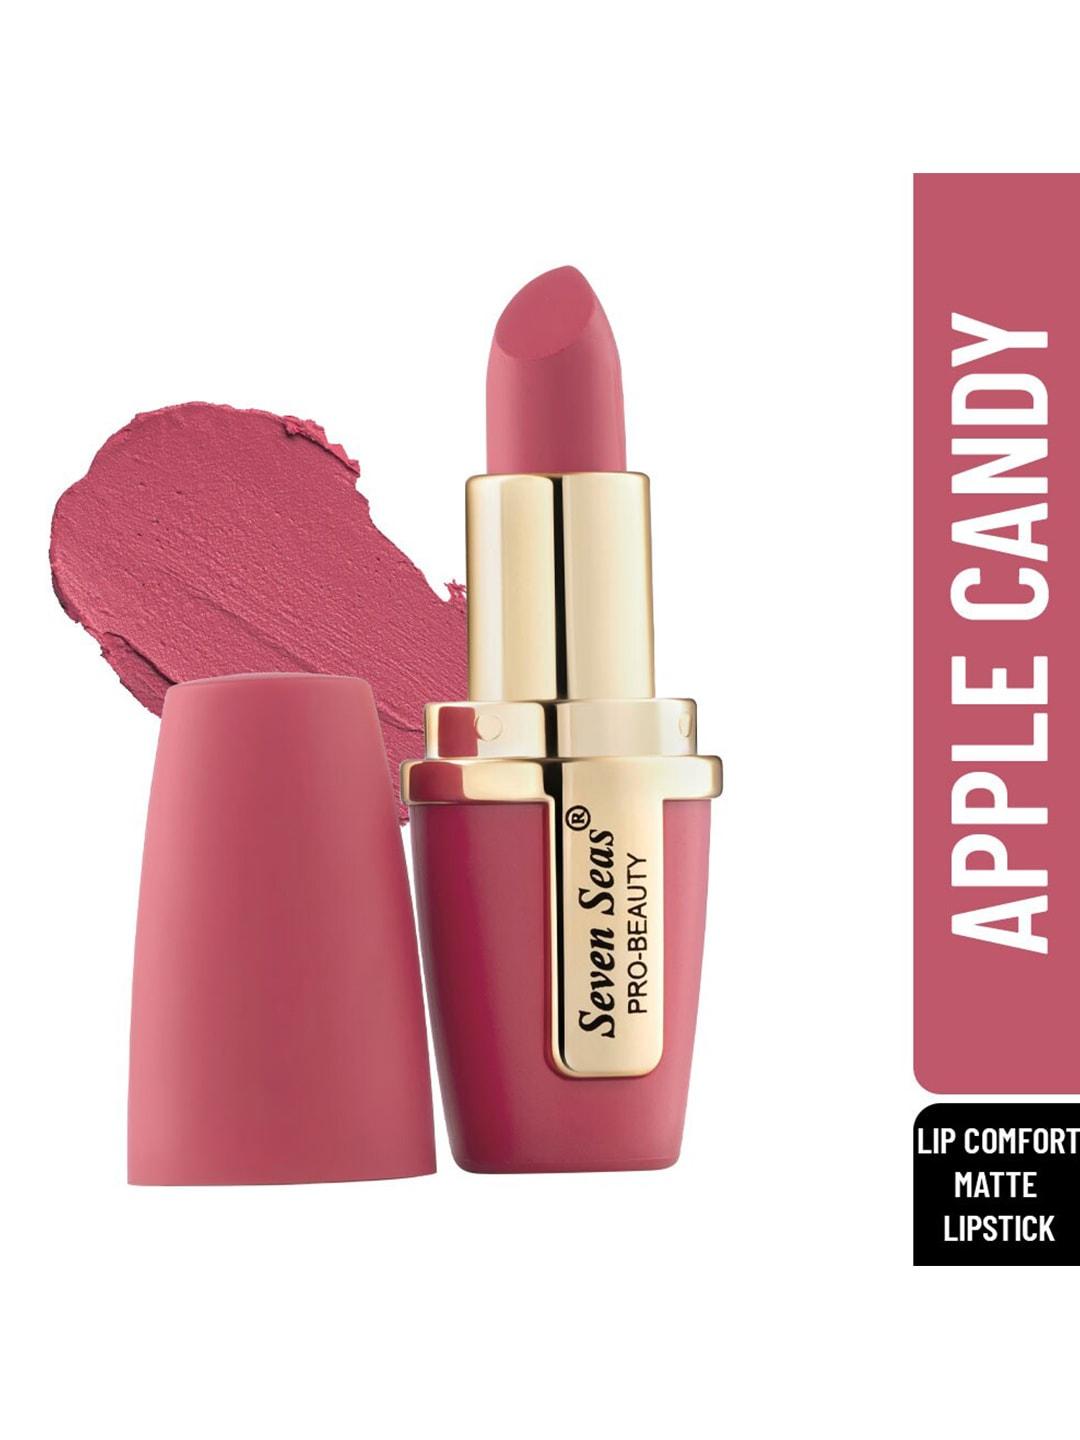 Seven Seas Women Peach Lip Comfort Velvet Matte Lipstick-Apple candy-1-4.2g